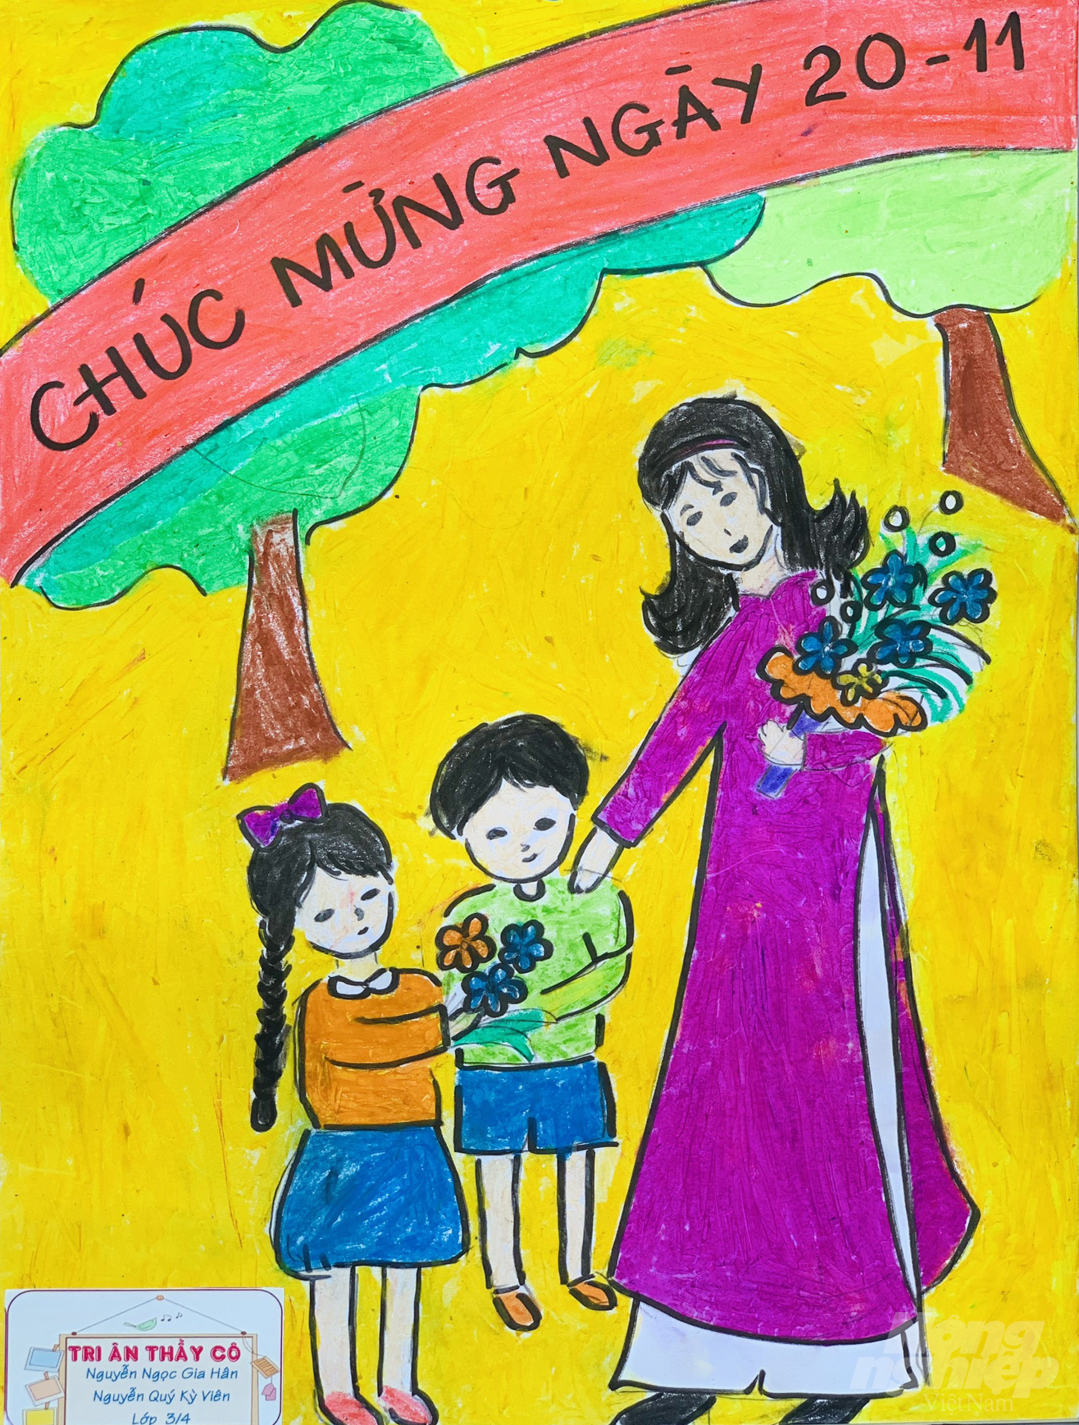 Tranh vẽ mừng ngày Nhà giáo Việt Nam 2011  Trường THPT Lê Ích Mộc